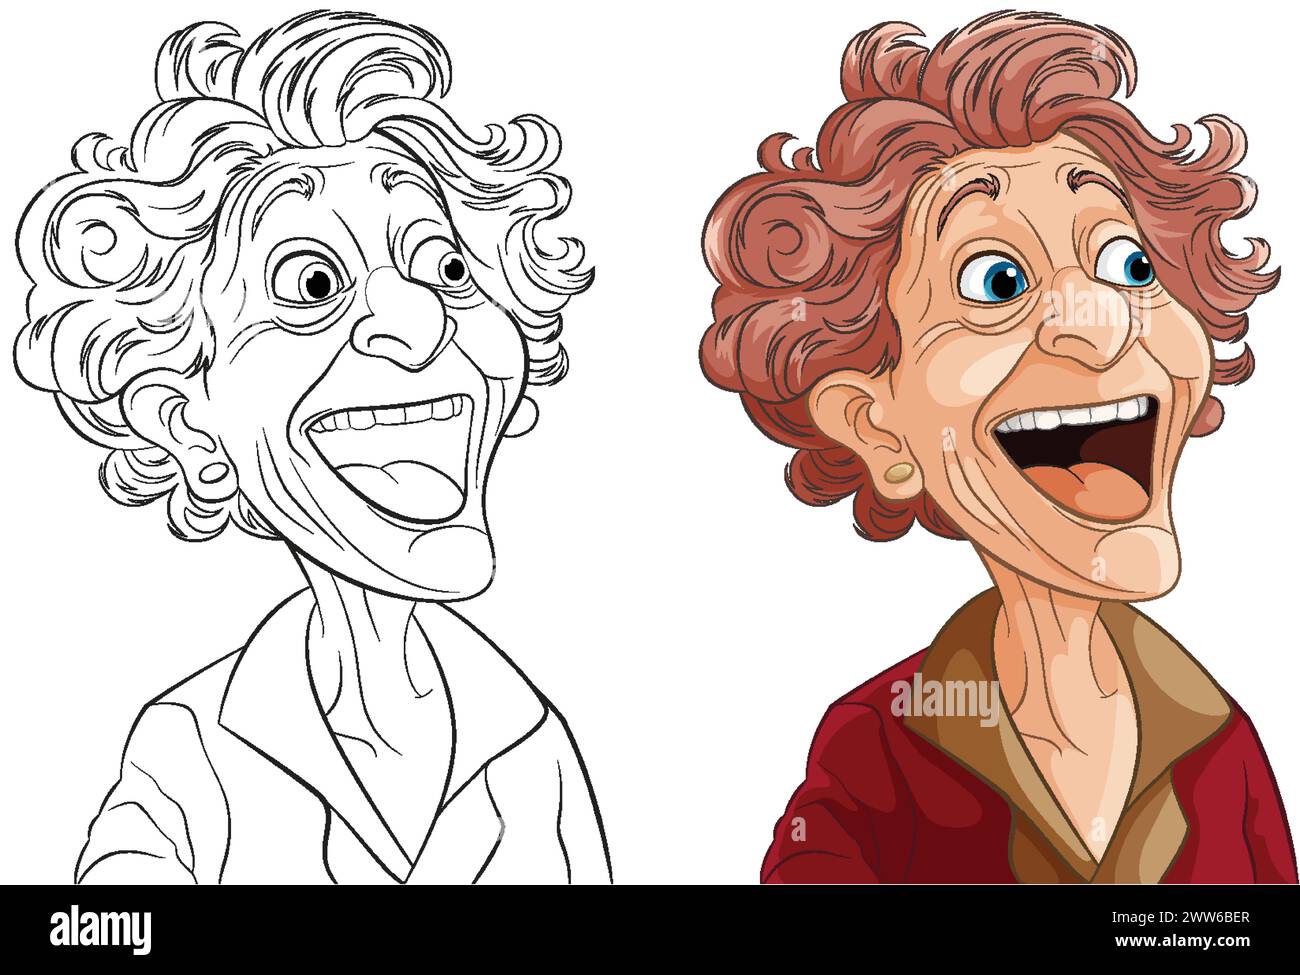 Arte vettoriale di una donna felice e anziana, colorata e delineata. Illustrazione Vettoriale